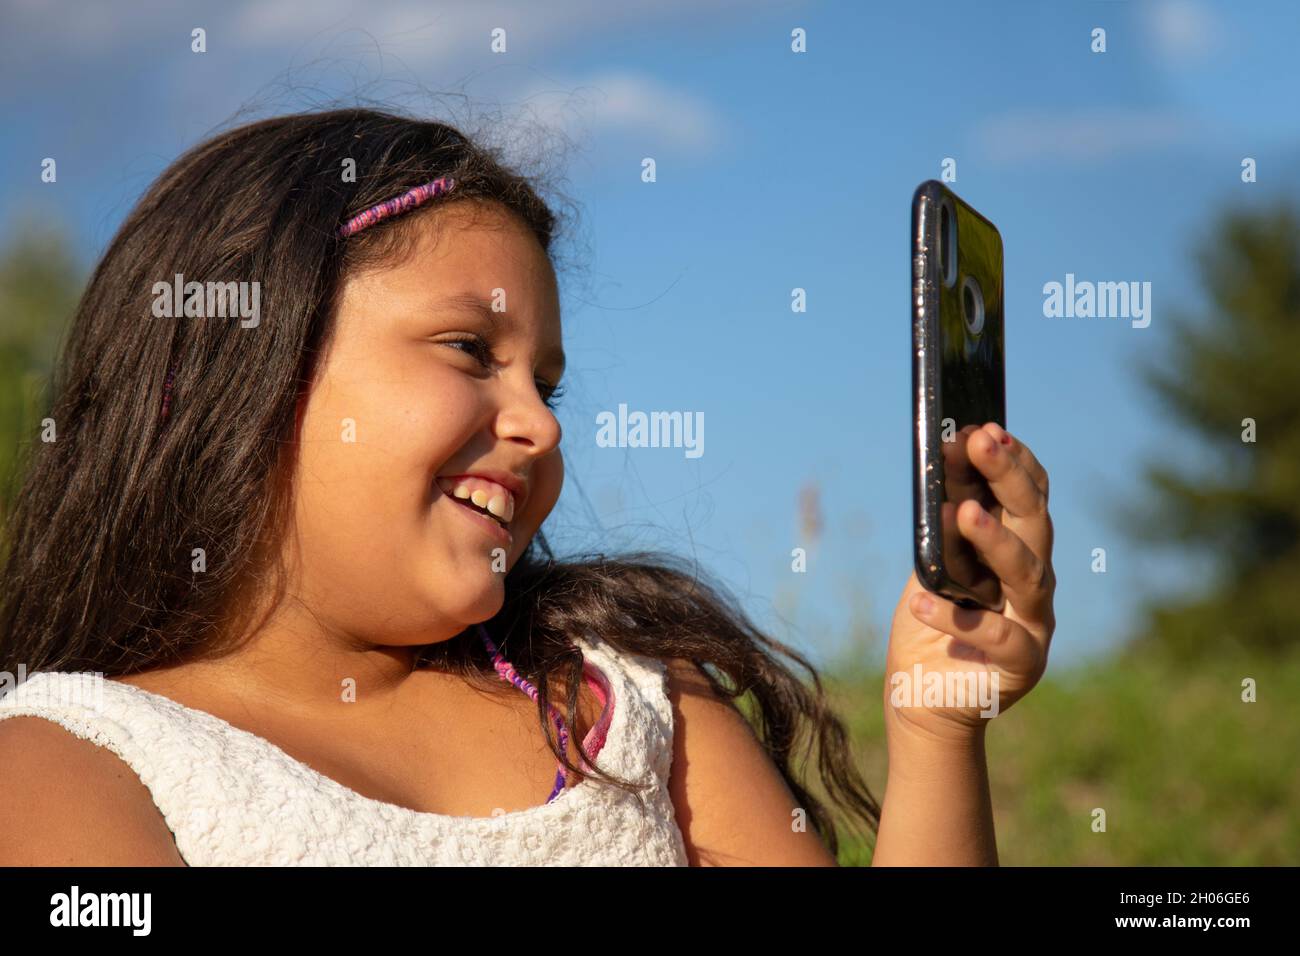 gypsy fille avec de longs cheveux noirs prend des selfies avec son smartphone Banque D'Images